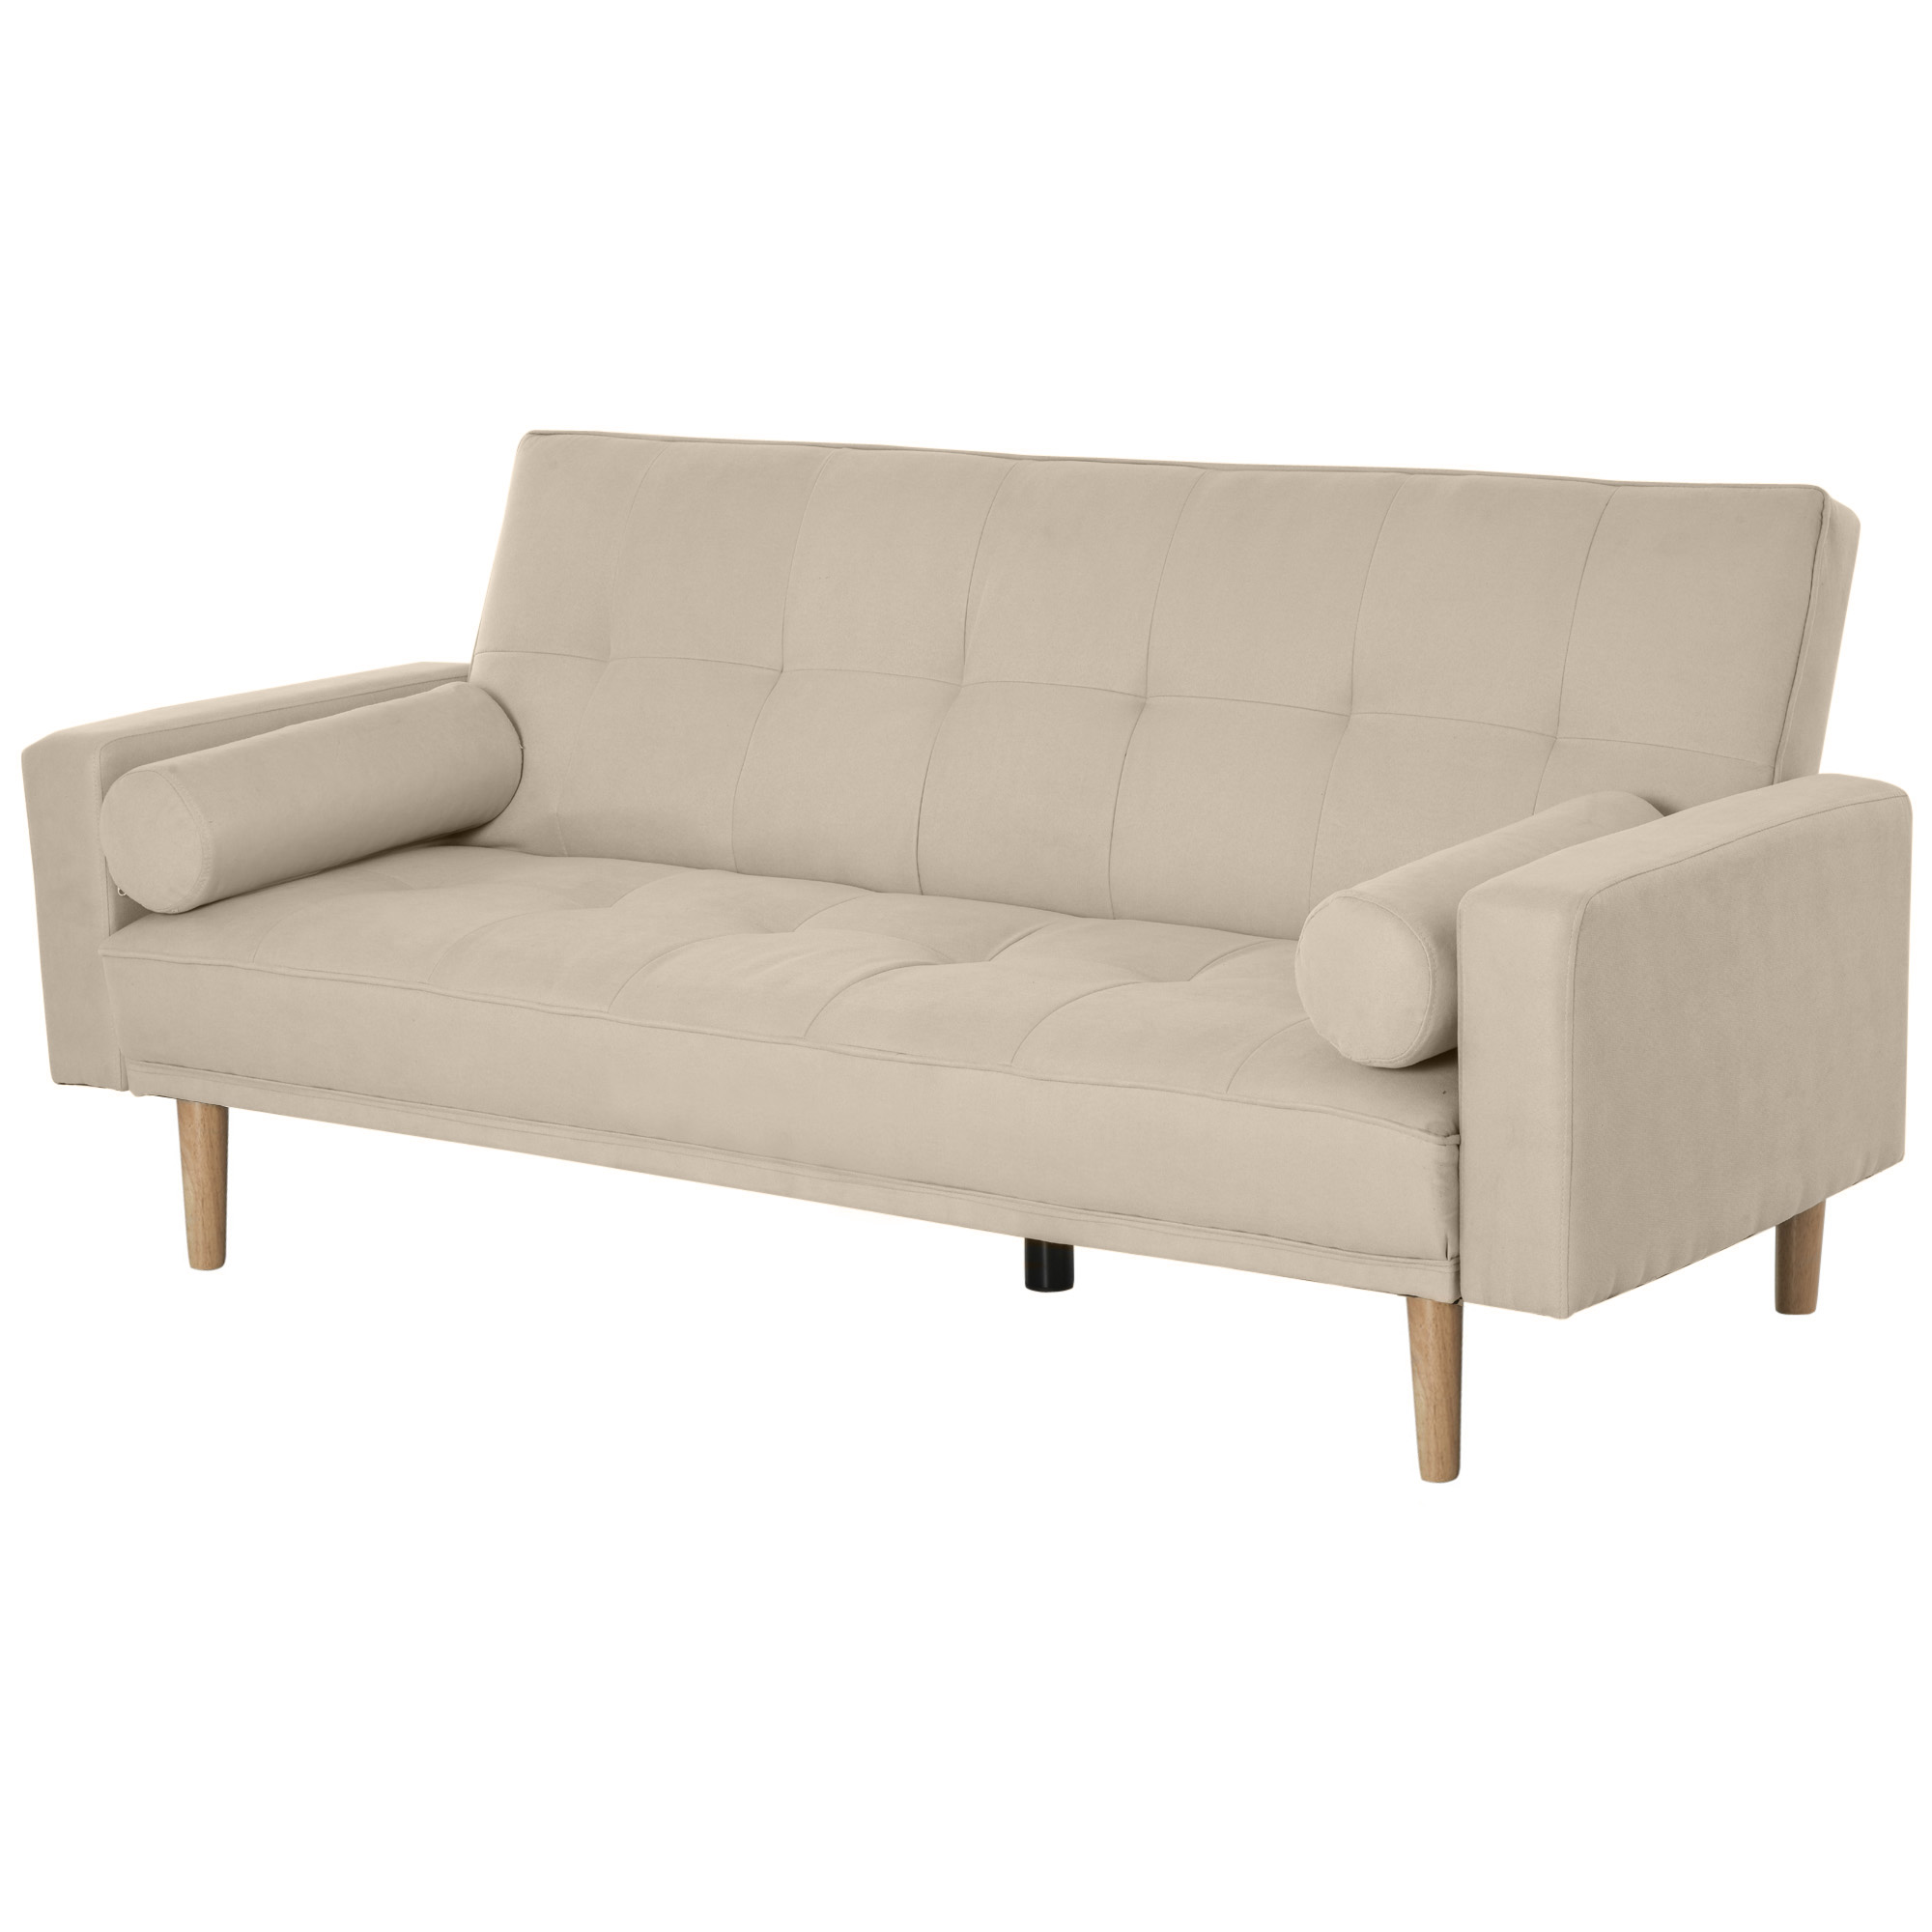 Τριθέσιος καναπές-κρεβάτι Homcom με ρυθμιζόμενη πλάτη σε 3 επίπεδα μπεζ 186 x 84 x 85 cm